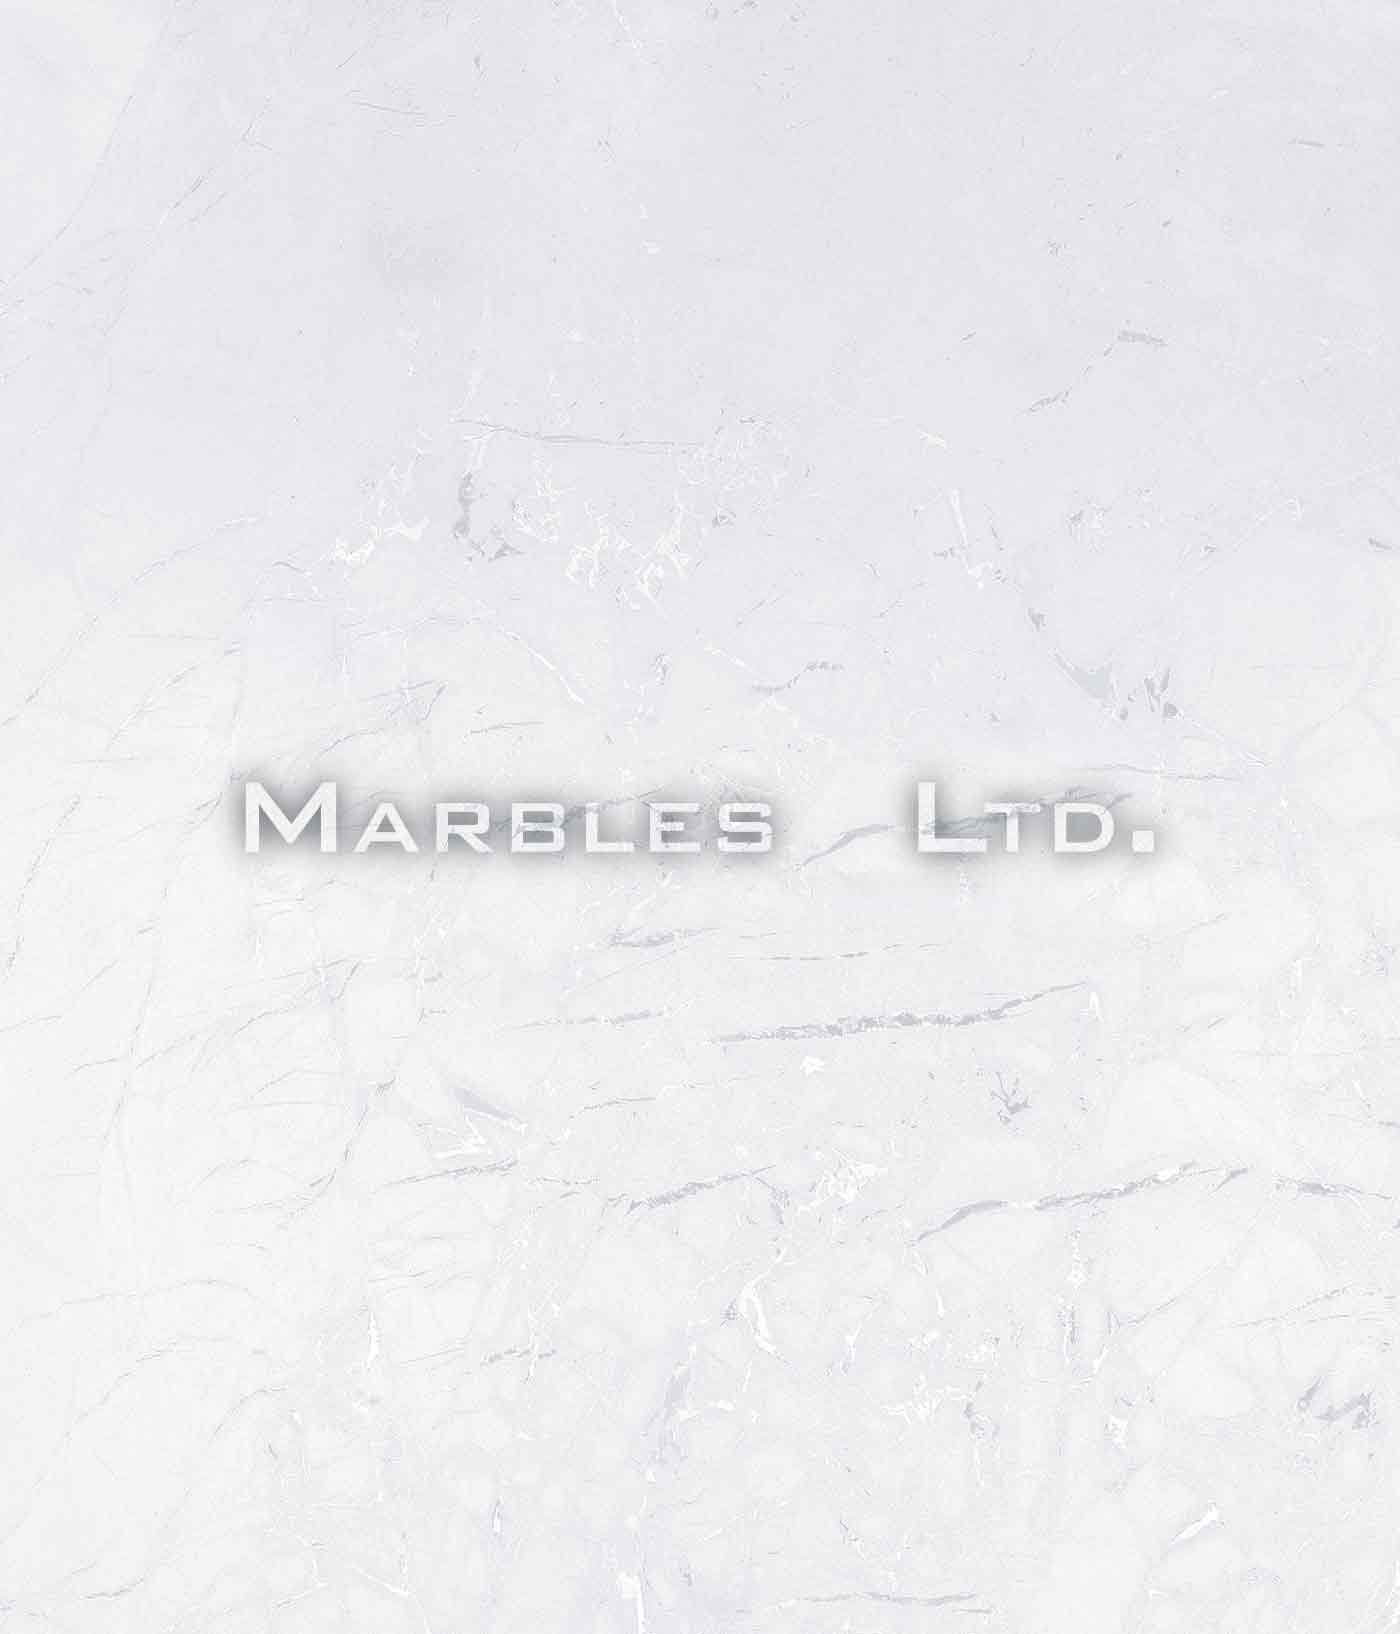 marbles ltd